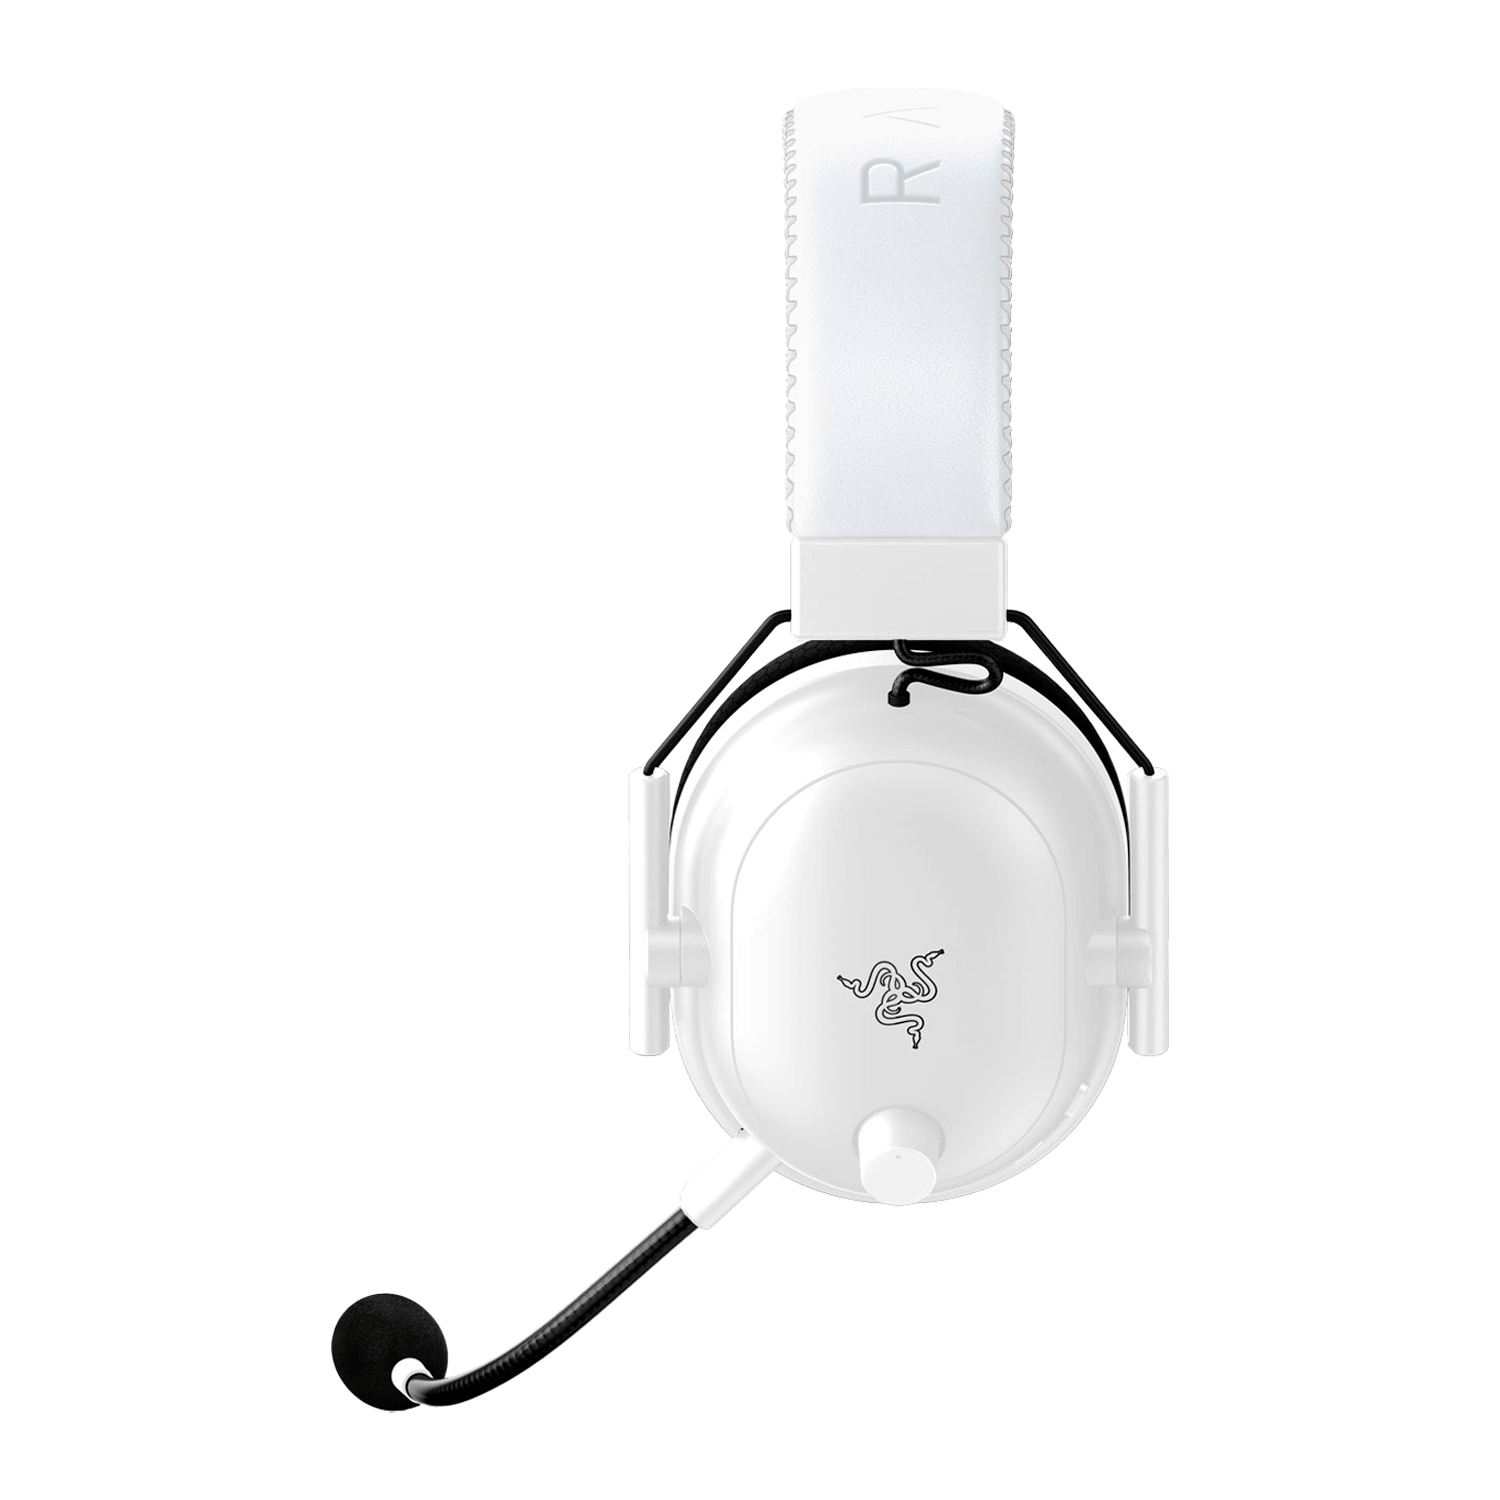 Headset Gamer Razer Blackshark V2 Pro Wireless Edition - Branco (RZ04-03220300-R3U1)